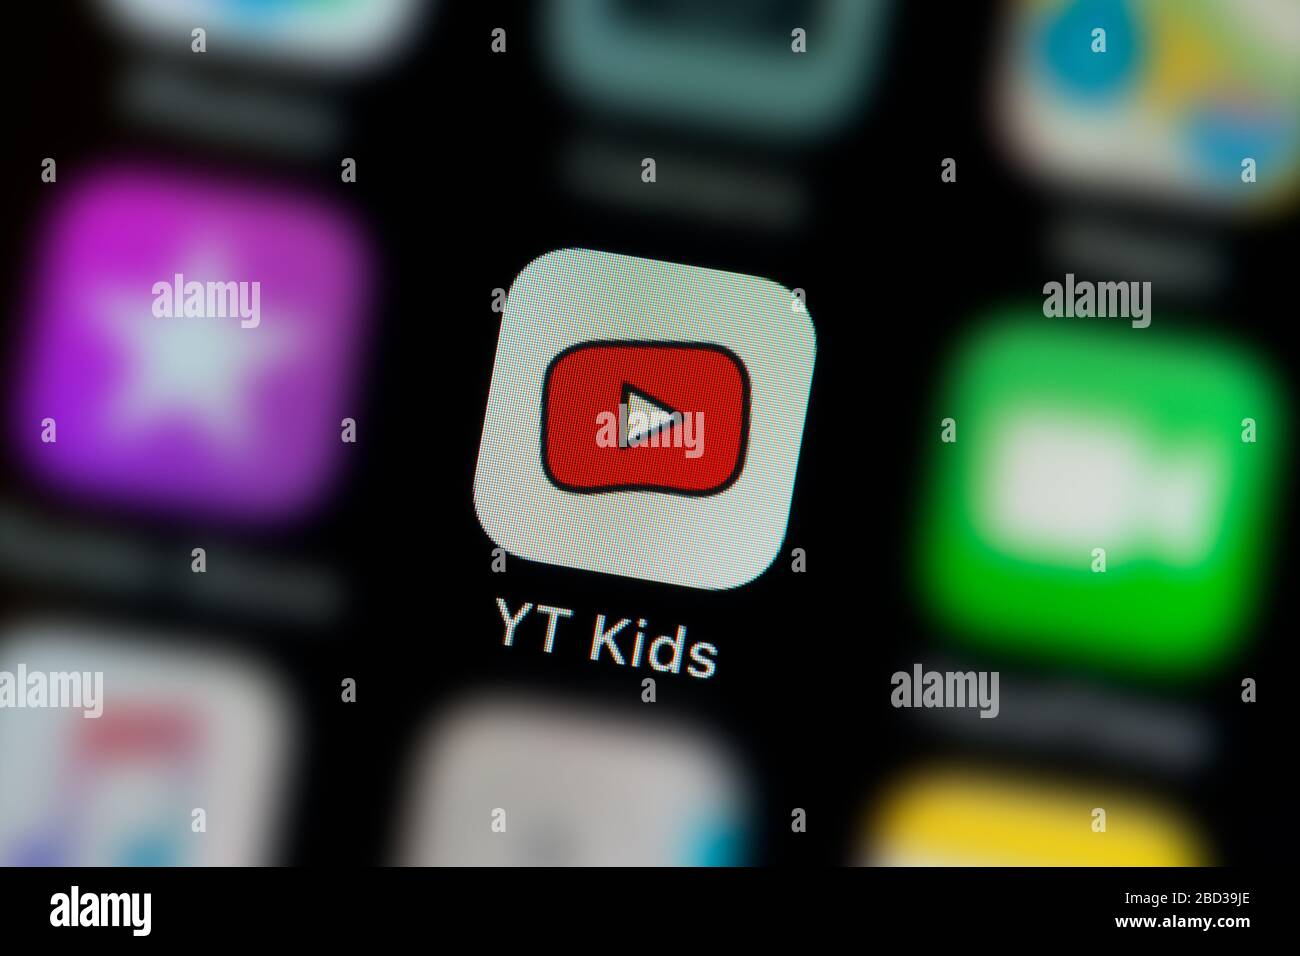 Nahaufnahme des Symbols der Youtube Kids App, wie auf dem Bildschirm eines Smartphones zu sehen ist (nur redaktionelle Verwendung) Stockfoto